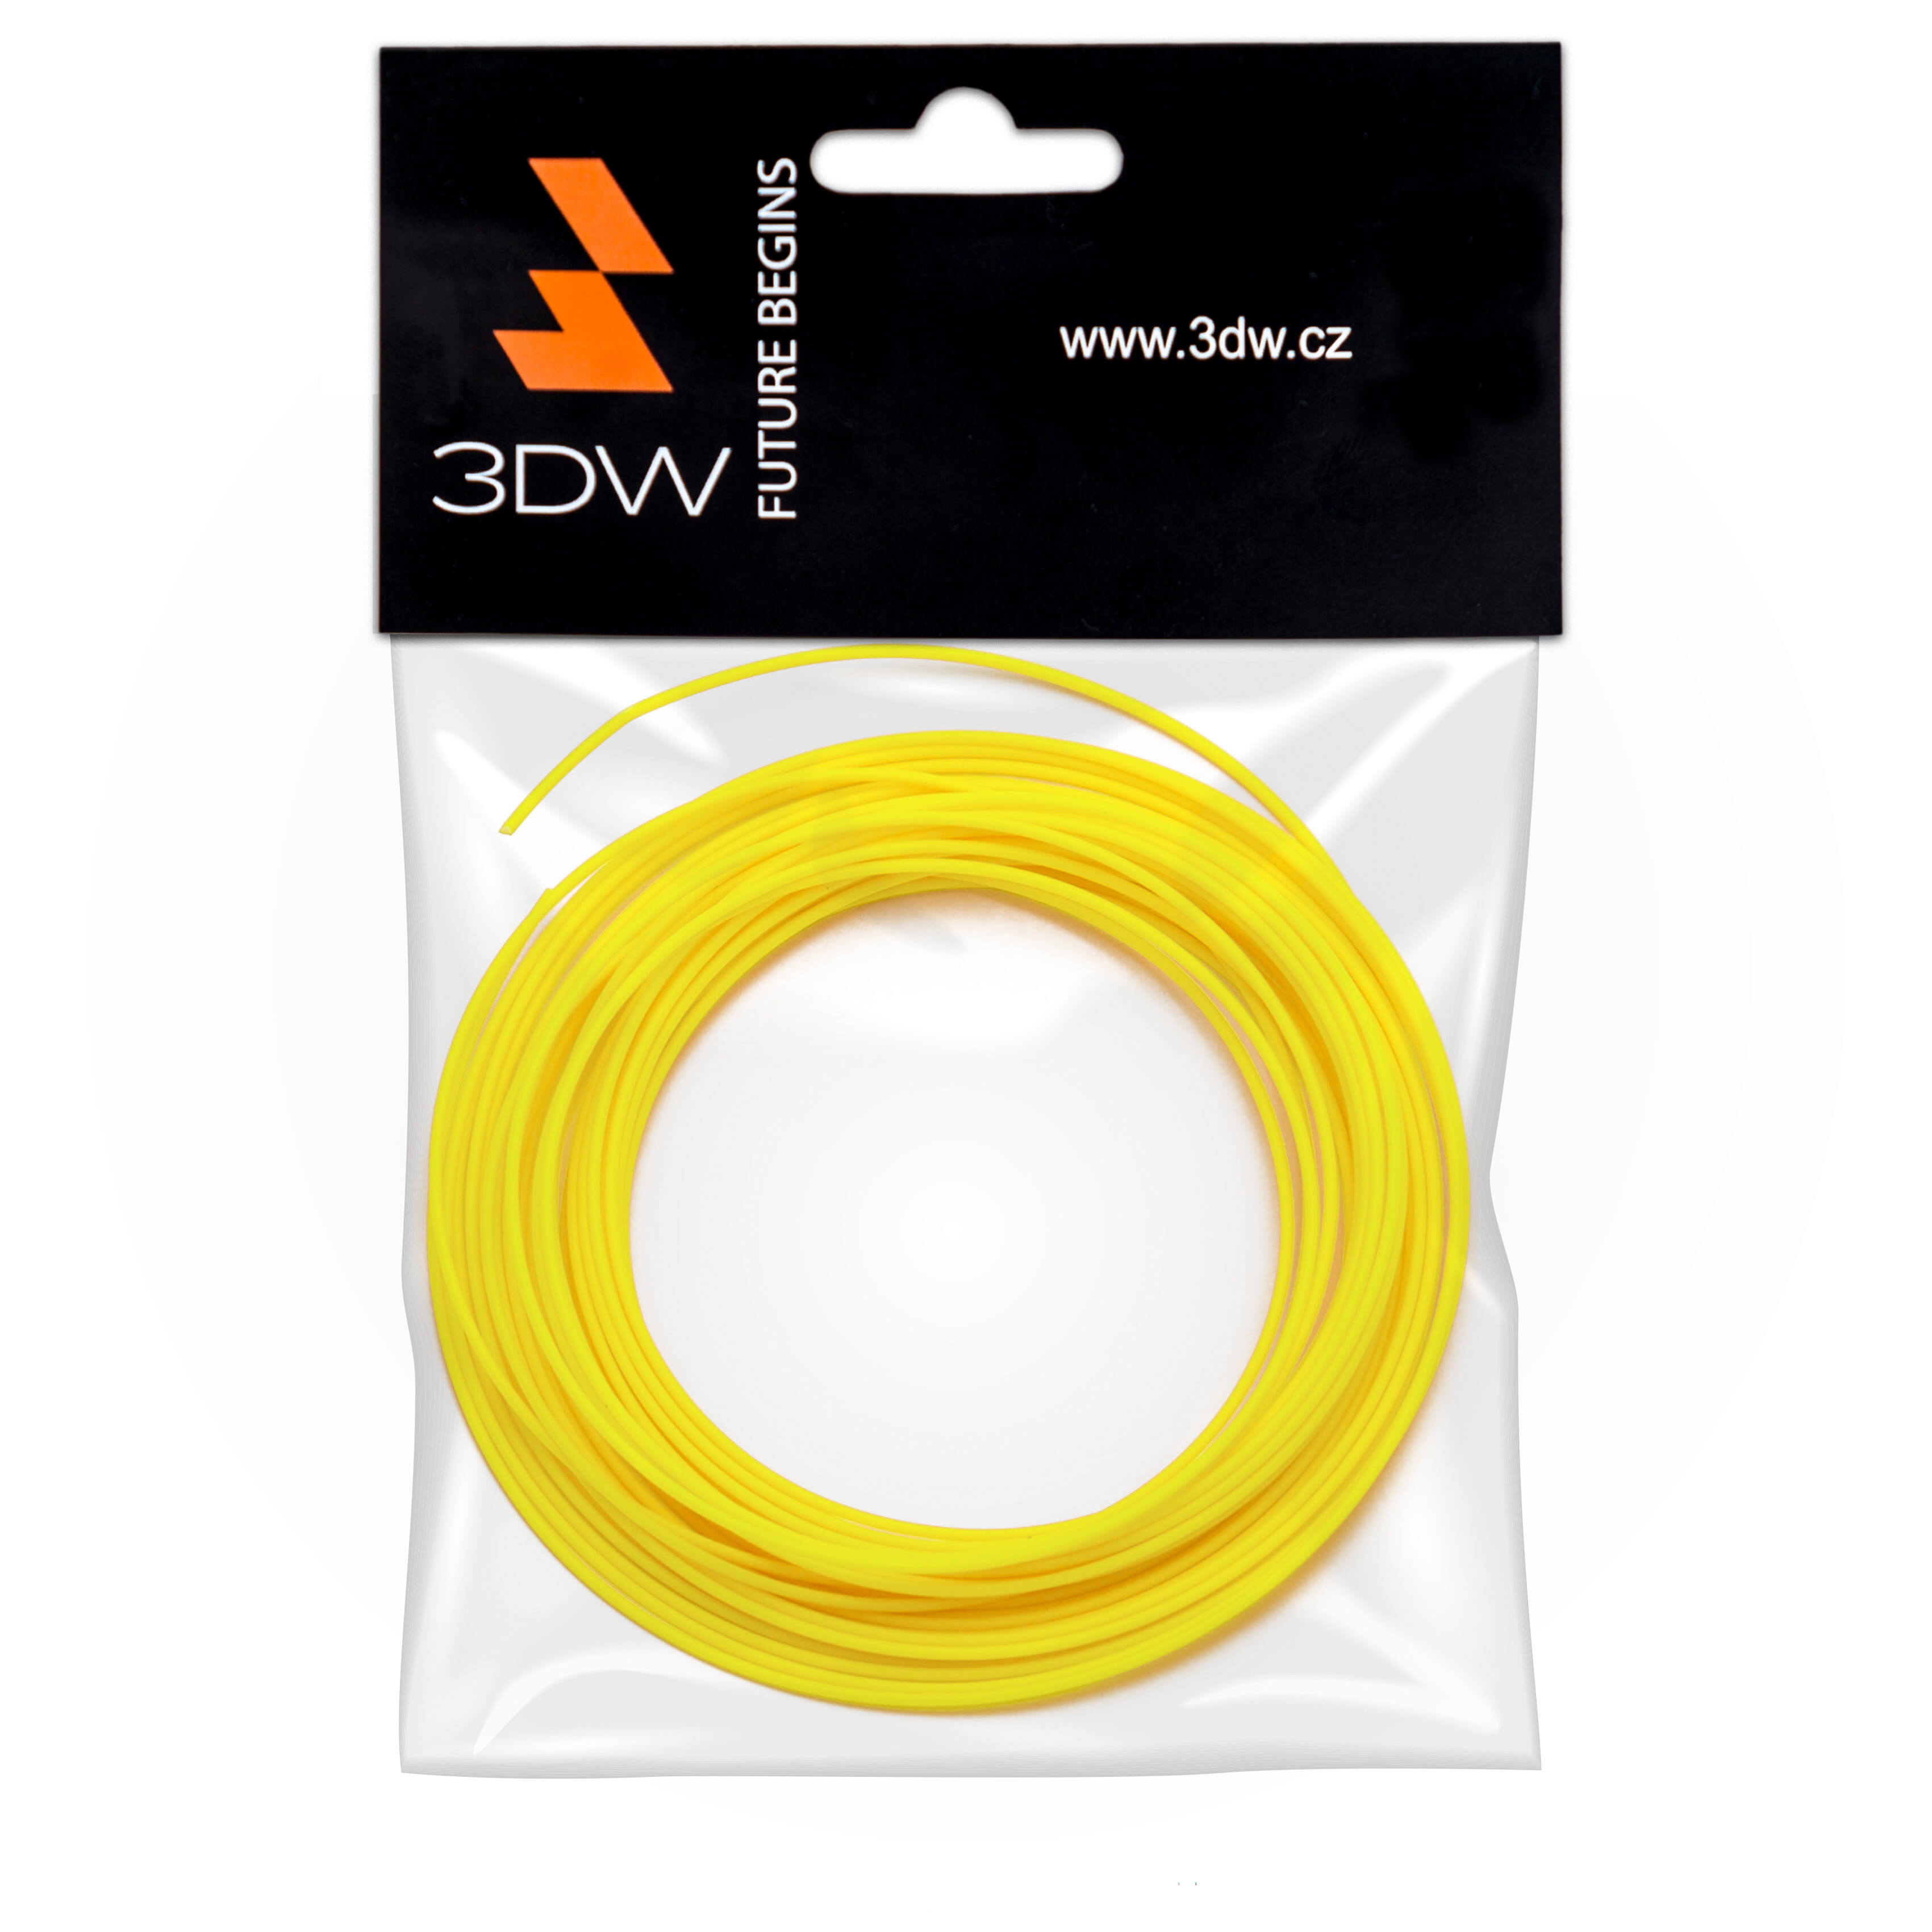 Tisková struna 3DW (filament) PLA, 1,75mm, 10m, žlutá, 220-250°C